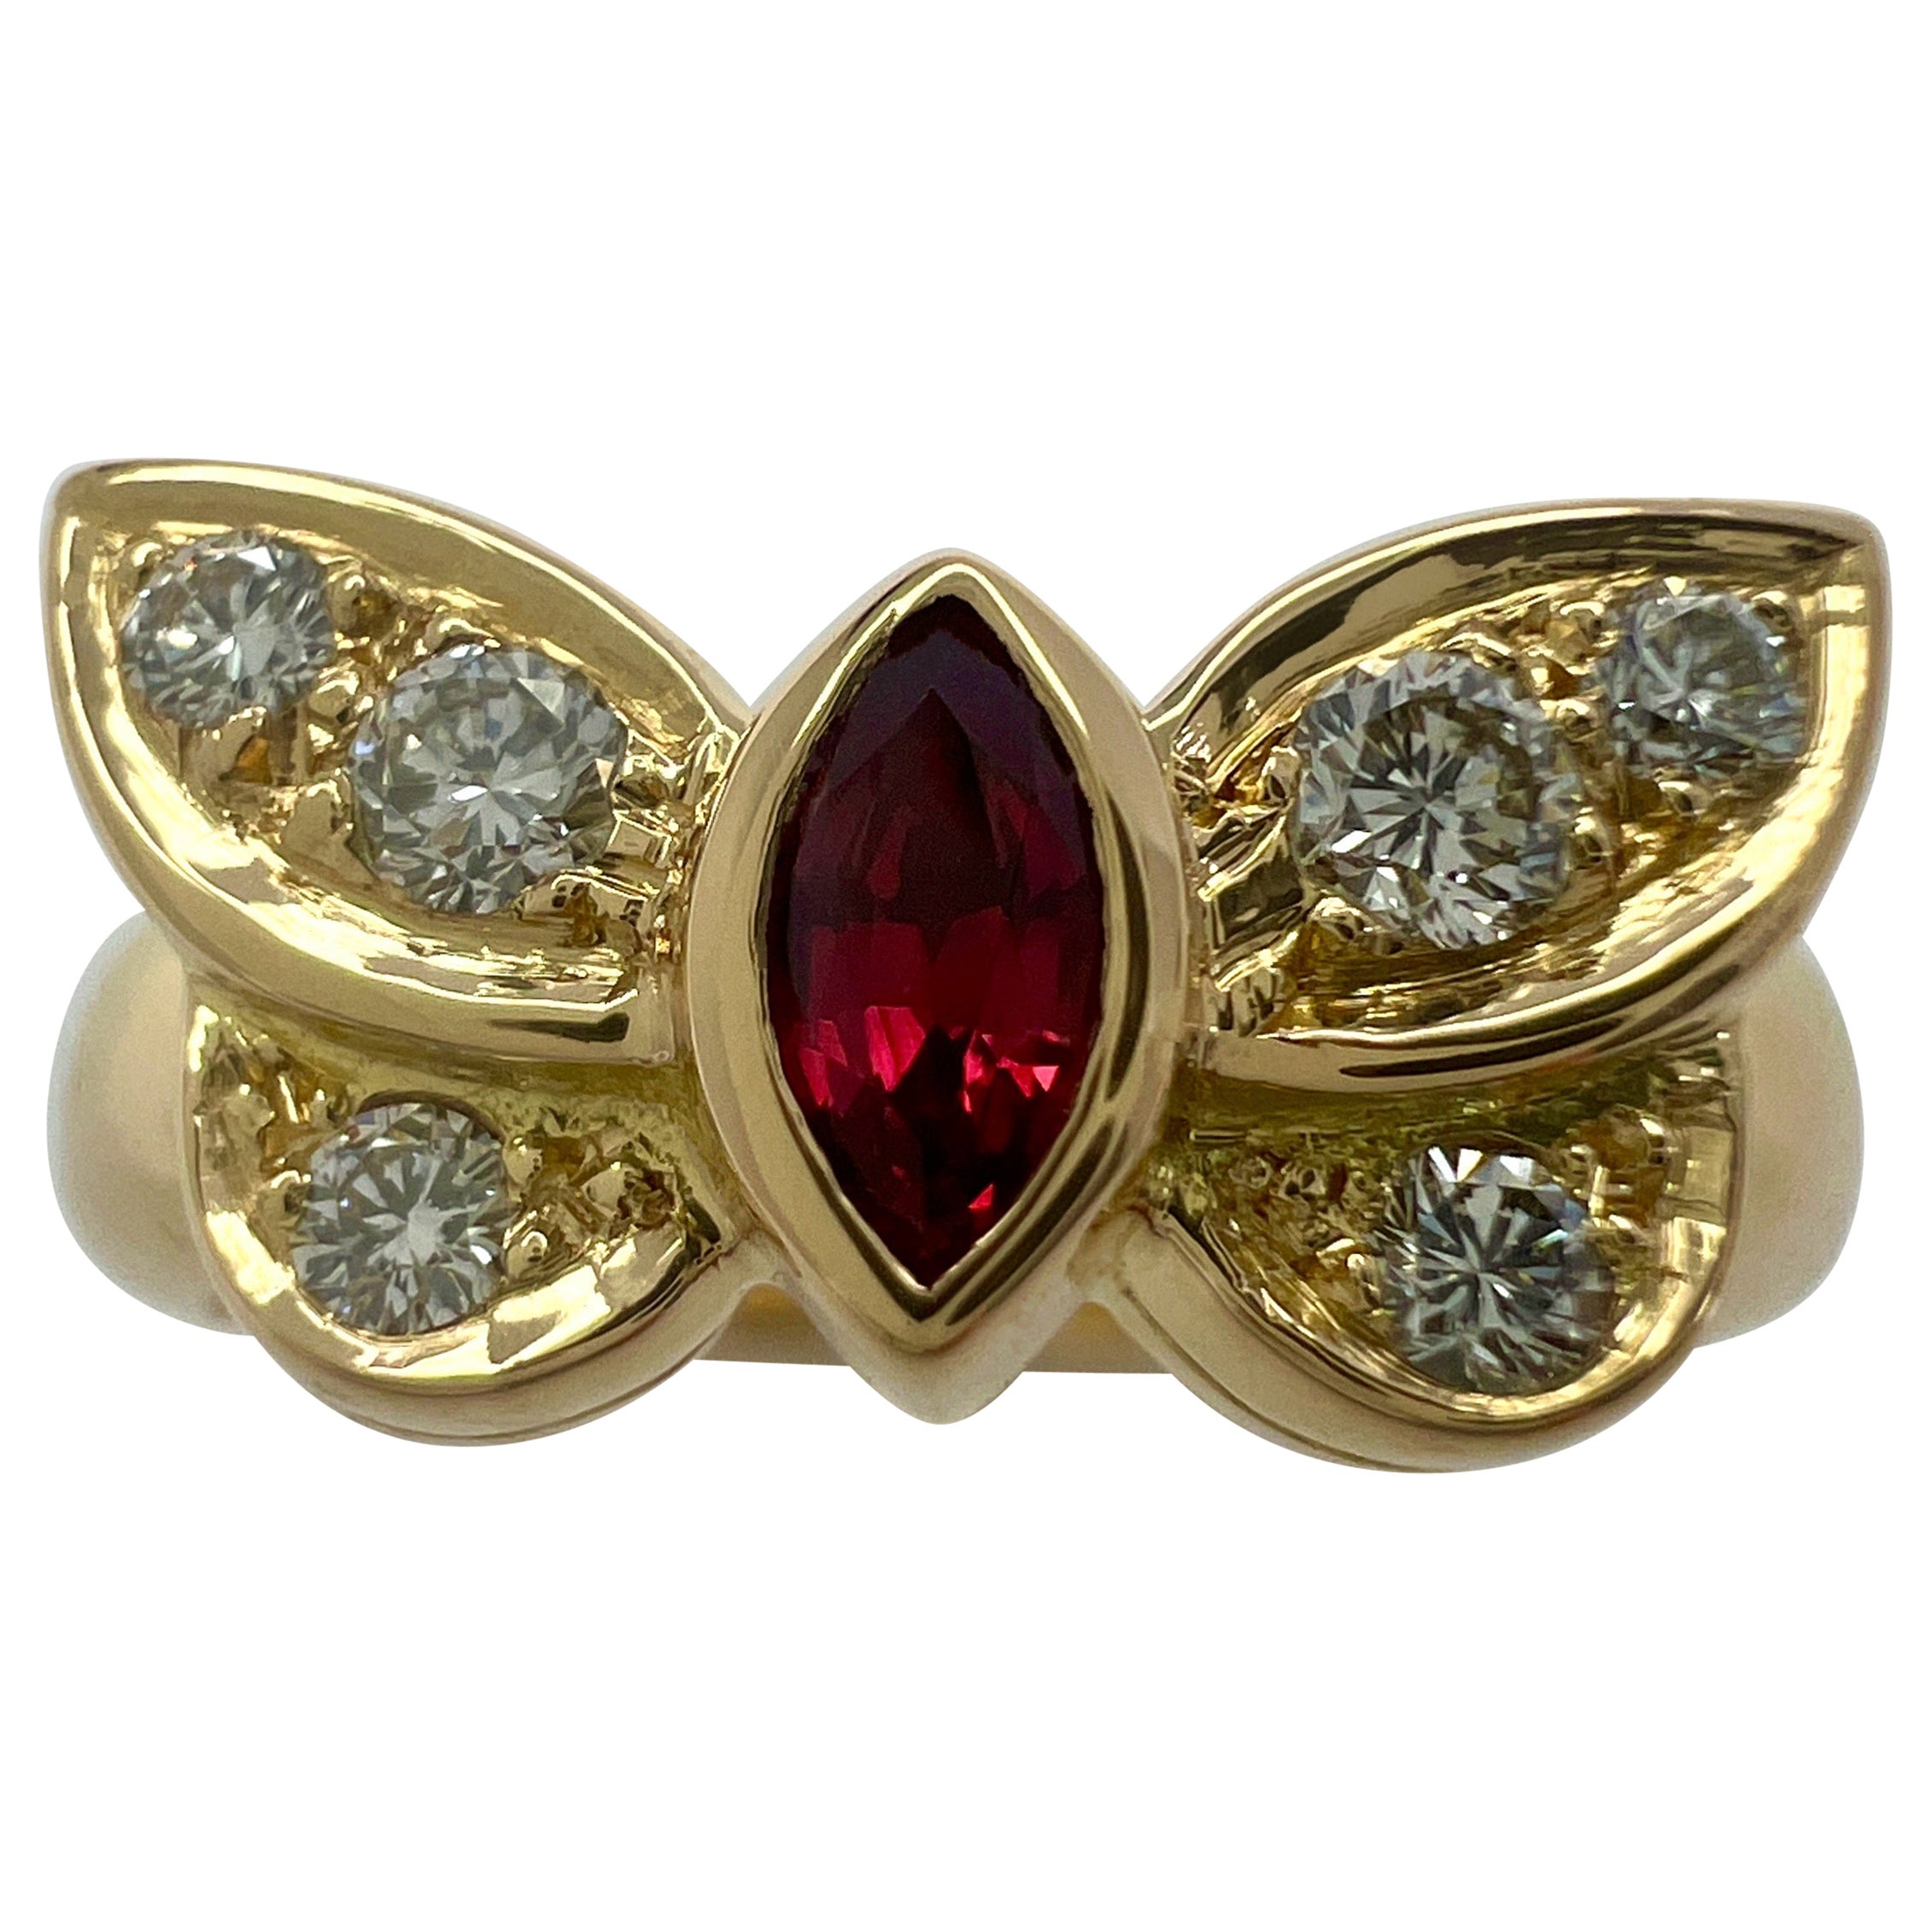 Rare bague papillon Van Cleef & Arpels en rubis marquise rouge vif et diamants